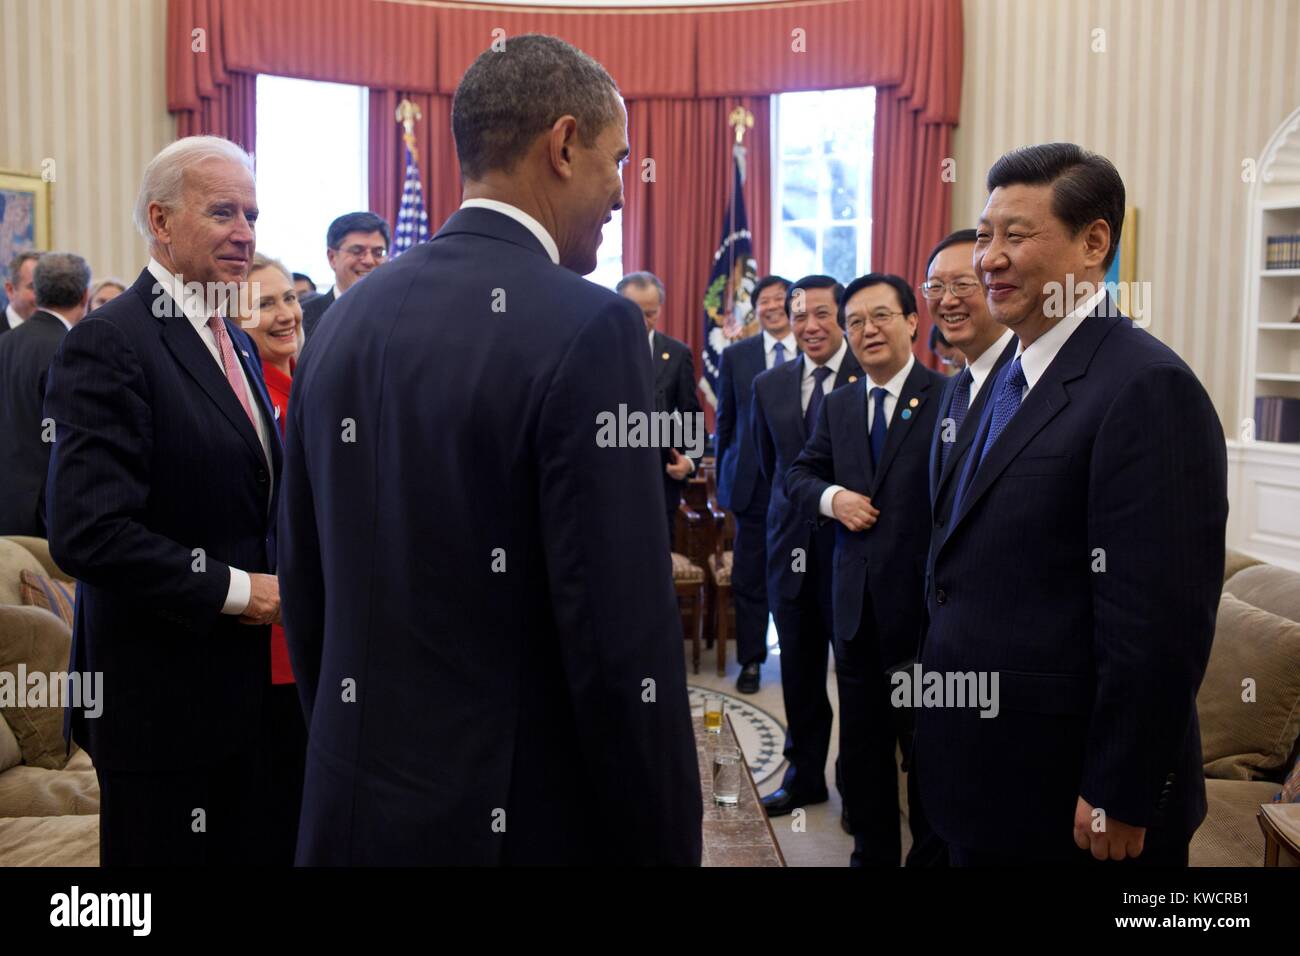 Vizepräsident Xi Jinping an der Spitze der chinesischen Delegation Treffen mit Präsident Obama. Oval Office, 14.02.2012. 2013 Xi wurde Generalsekretär der Kommunistischen Partei und der Präsident der Volksrepublik China. Auf der linken Seite ist VP Joe Biden. (BSLOC_2015_3_157) Stockfoto